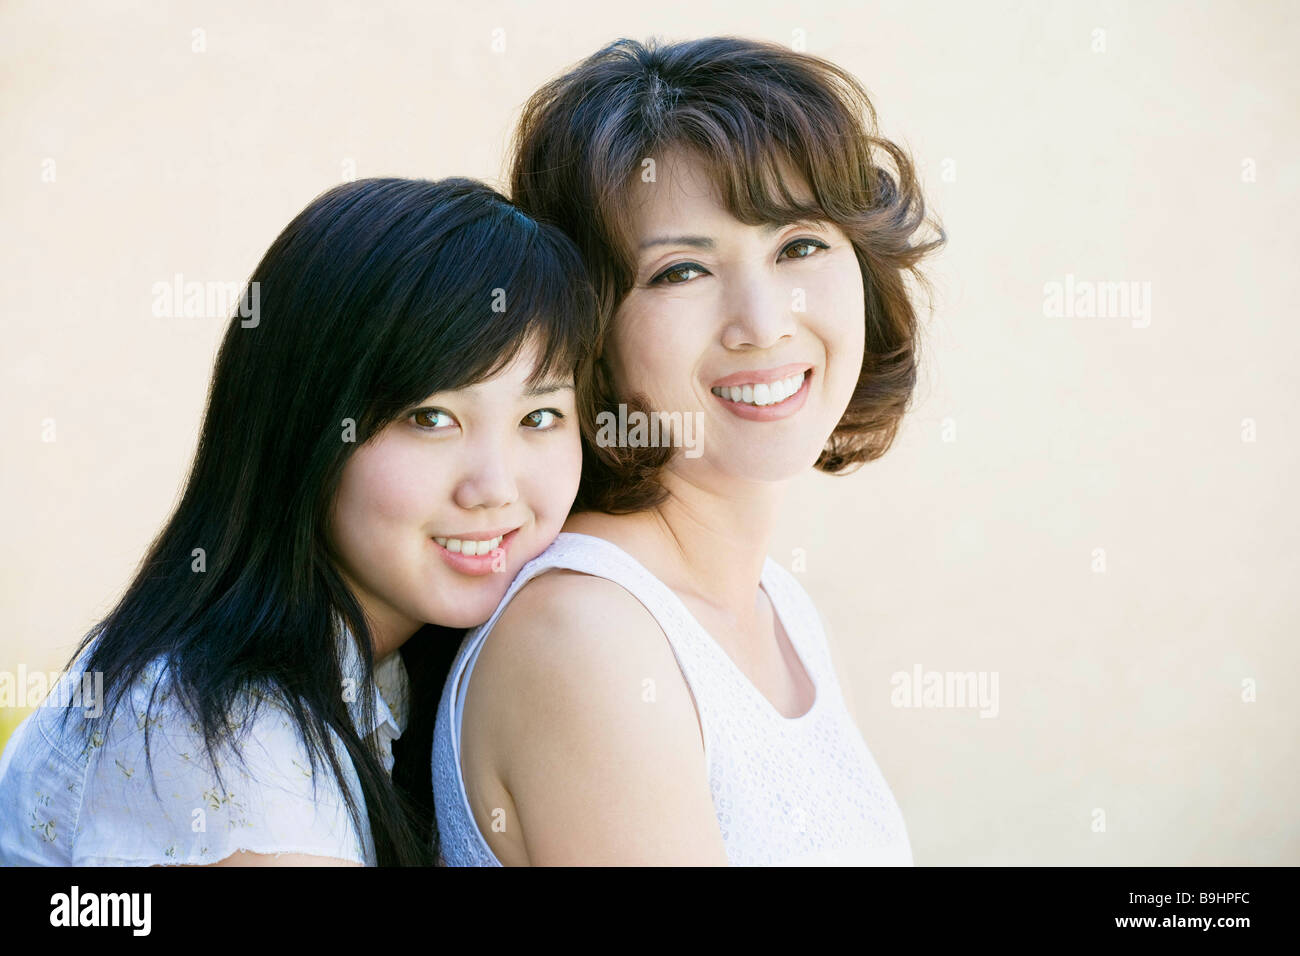 Японская мама вк. Японки мать и дочь красотки. Сразу две улыбки маме. Дочка и мать улыбаются лоб в лоб. Её улыбка мама фото фон.